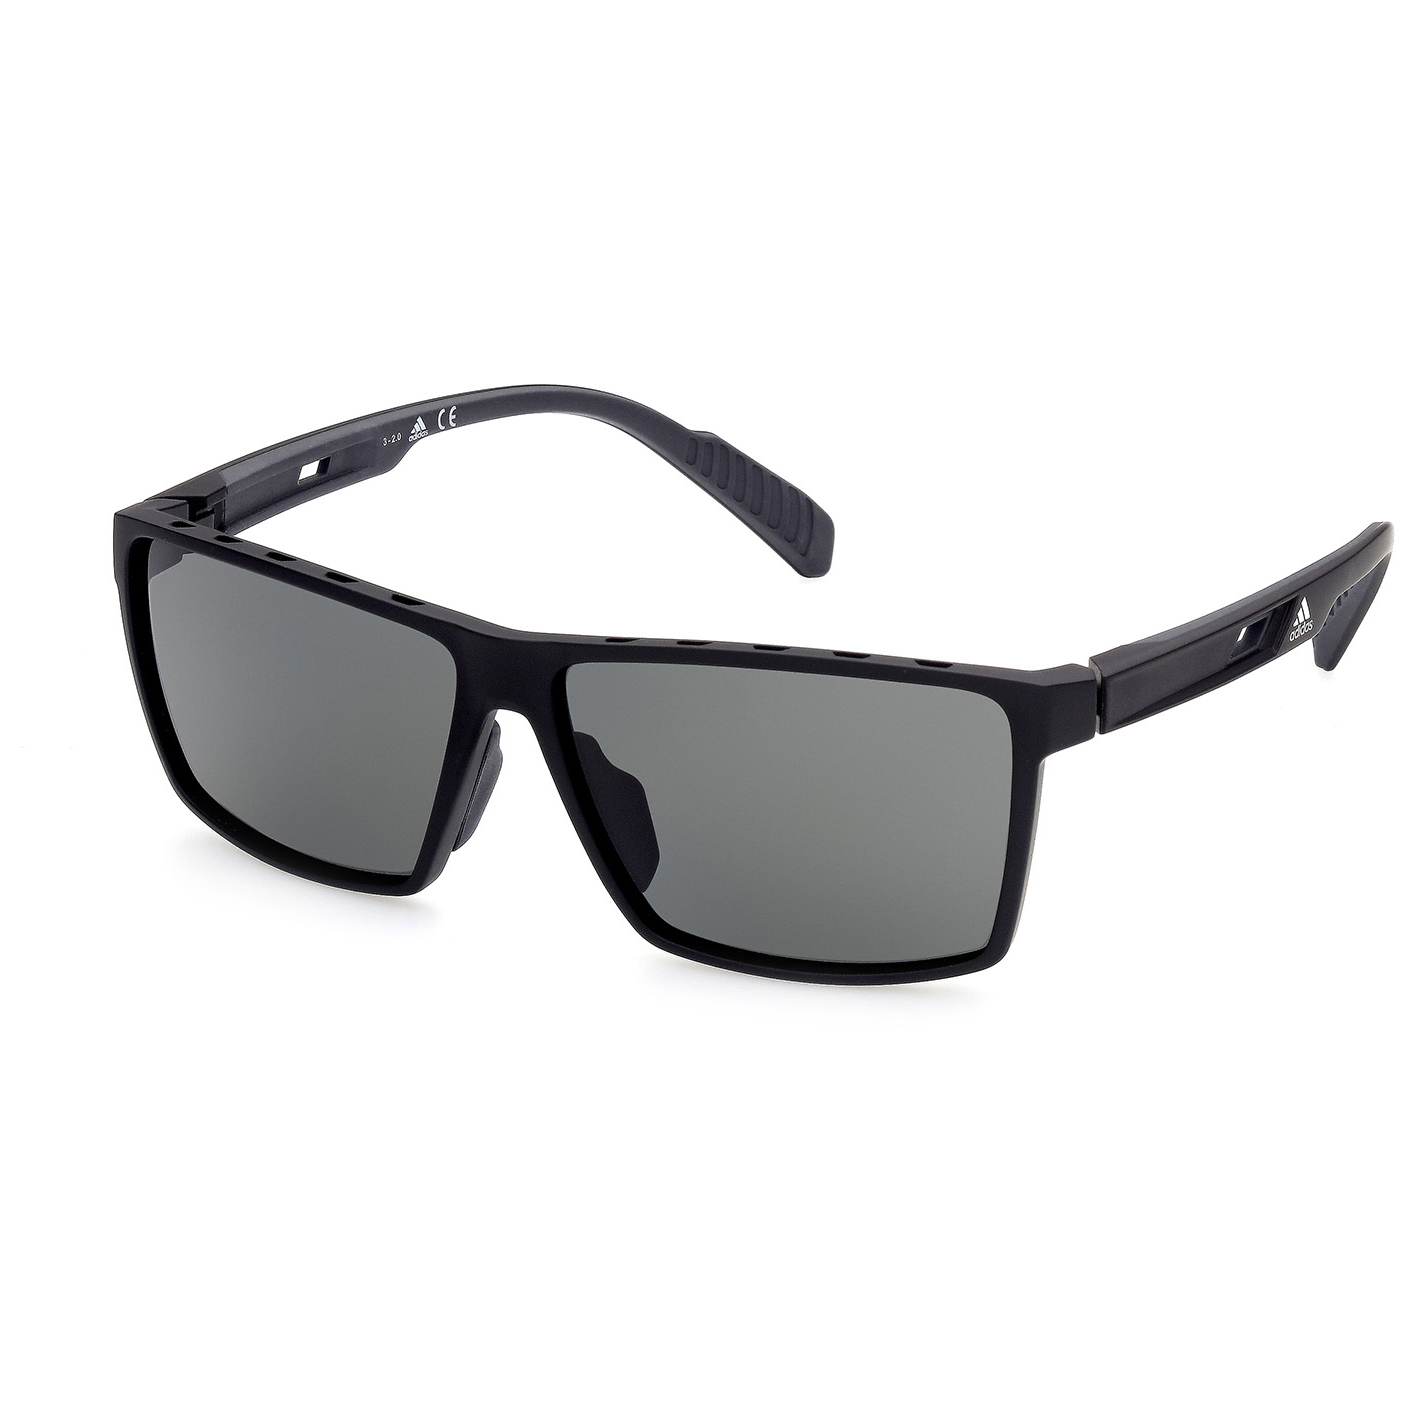 Солнцезащитные очки Adidas SP0034 Polarized Cat 3, матовый черный очки солнцезащитные stylemark polarized l1475a